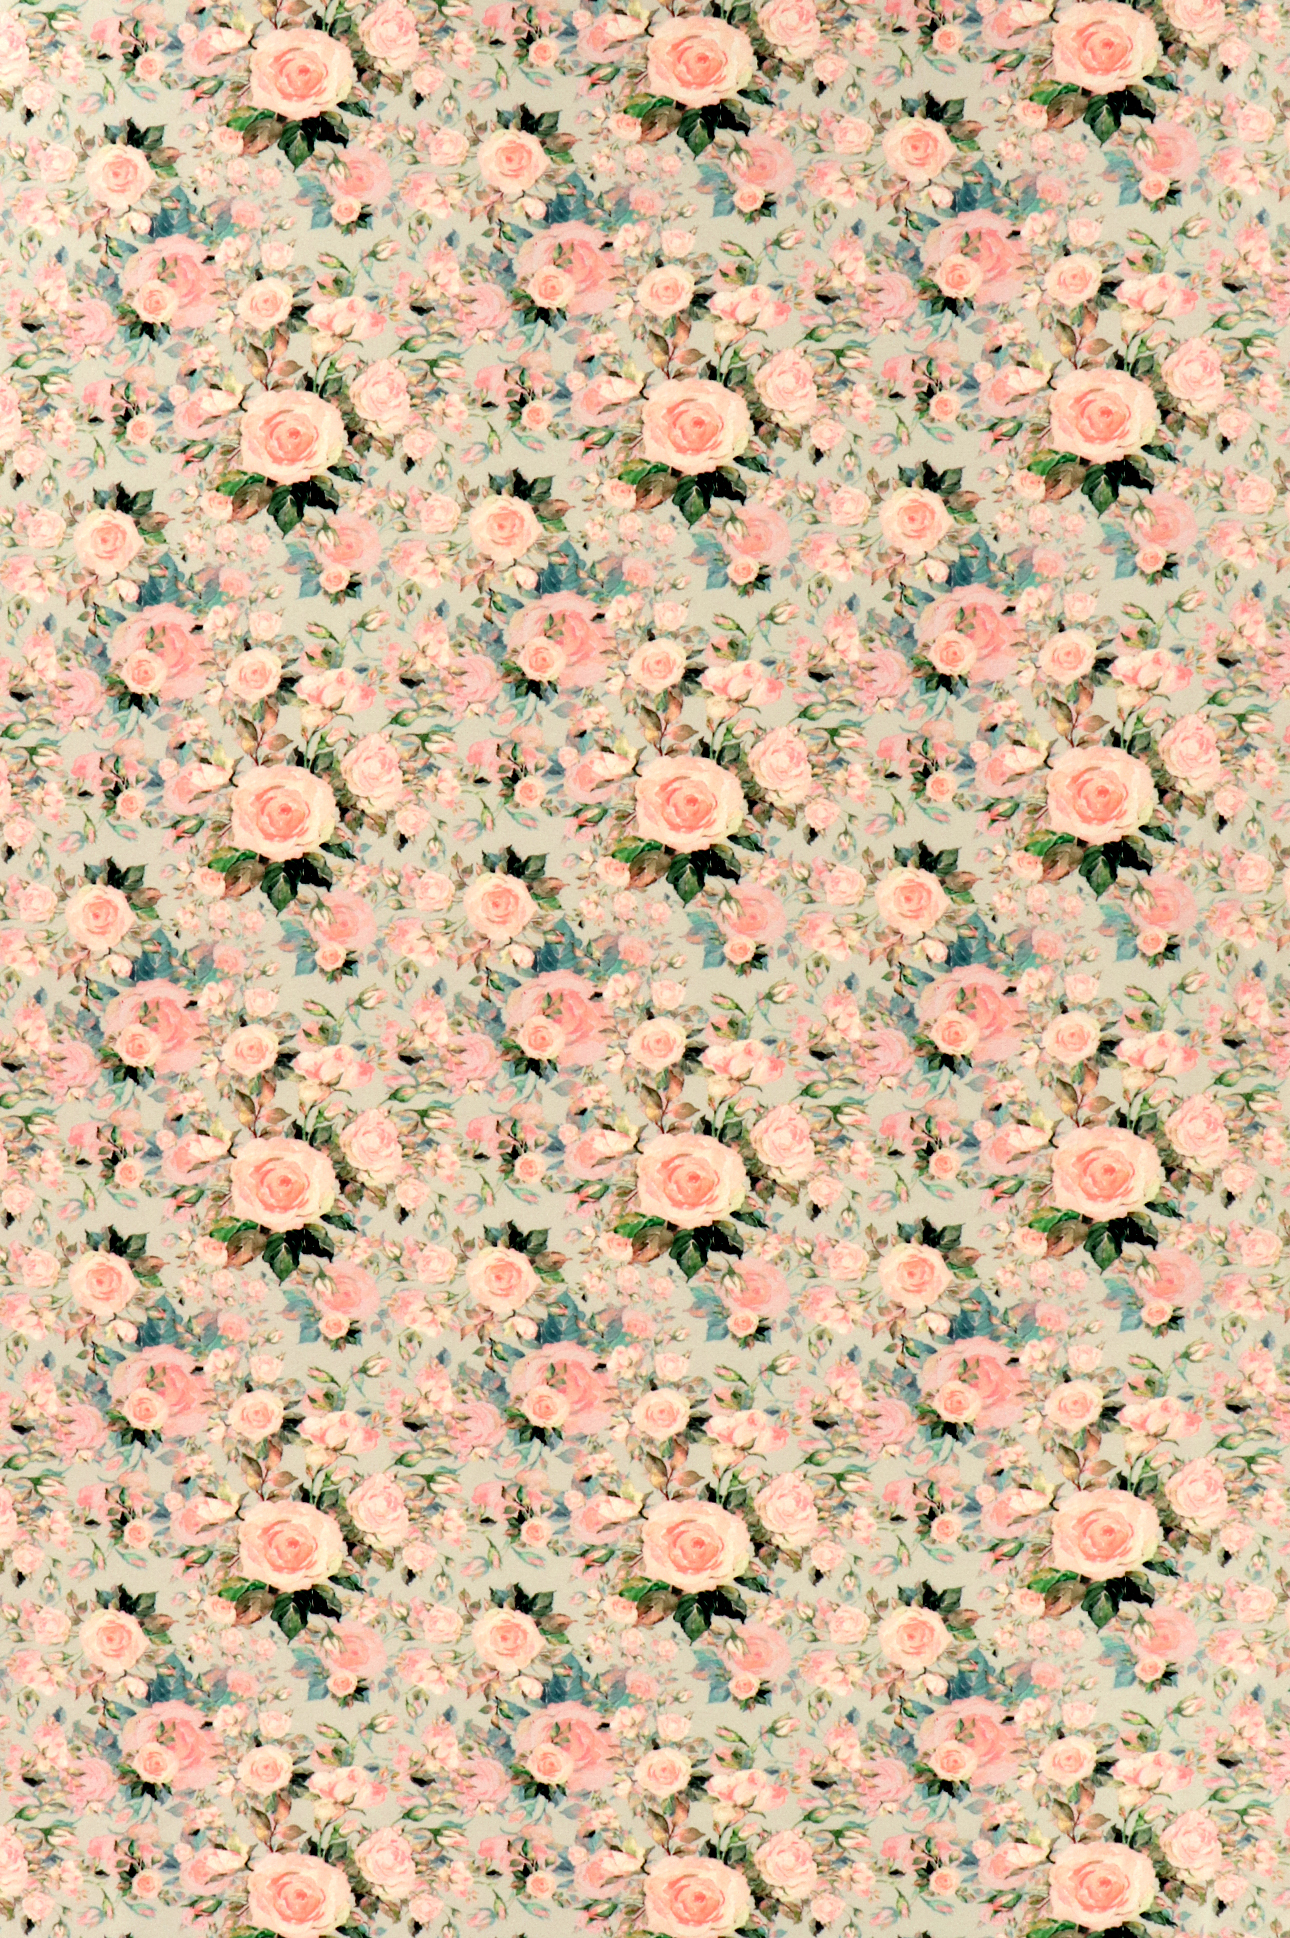 French Terry,  Rosenblüten in pastellfarben auf grau